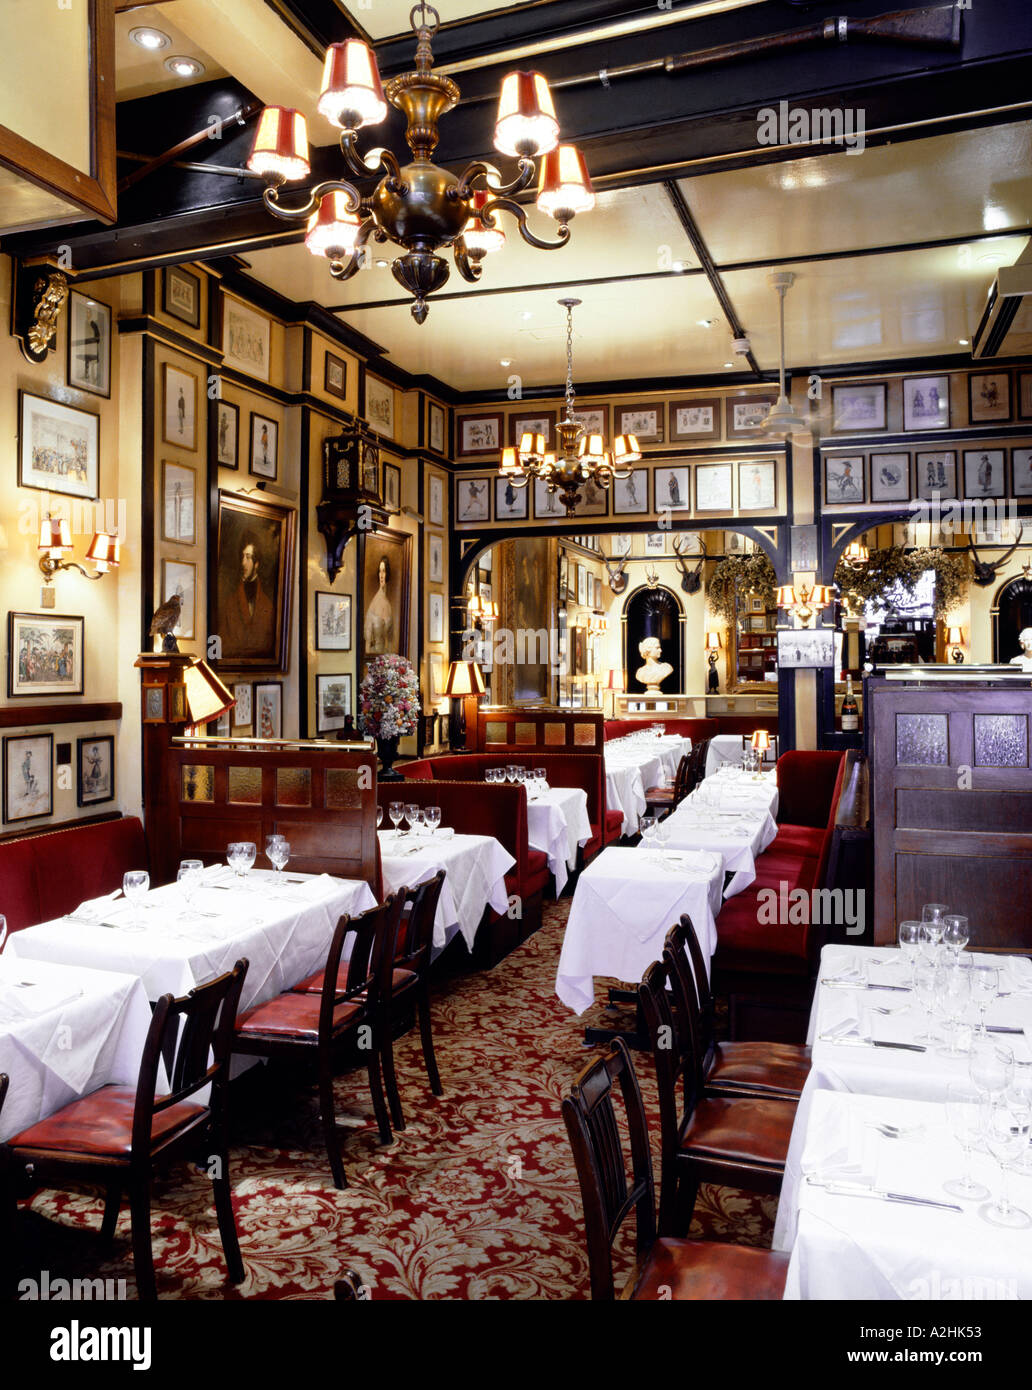 Das Innere der Regeln Restaurant in Covent Garden in London. Auf 6 X 7 Diafilm fotografiert. Stockfoto